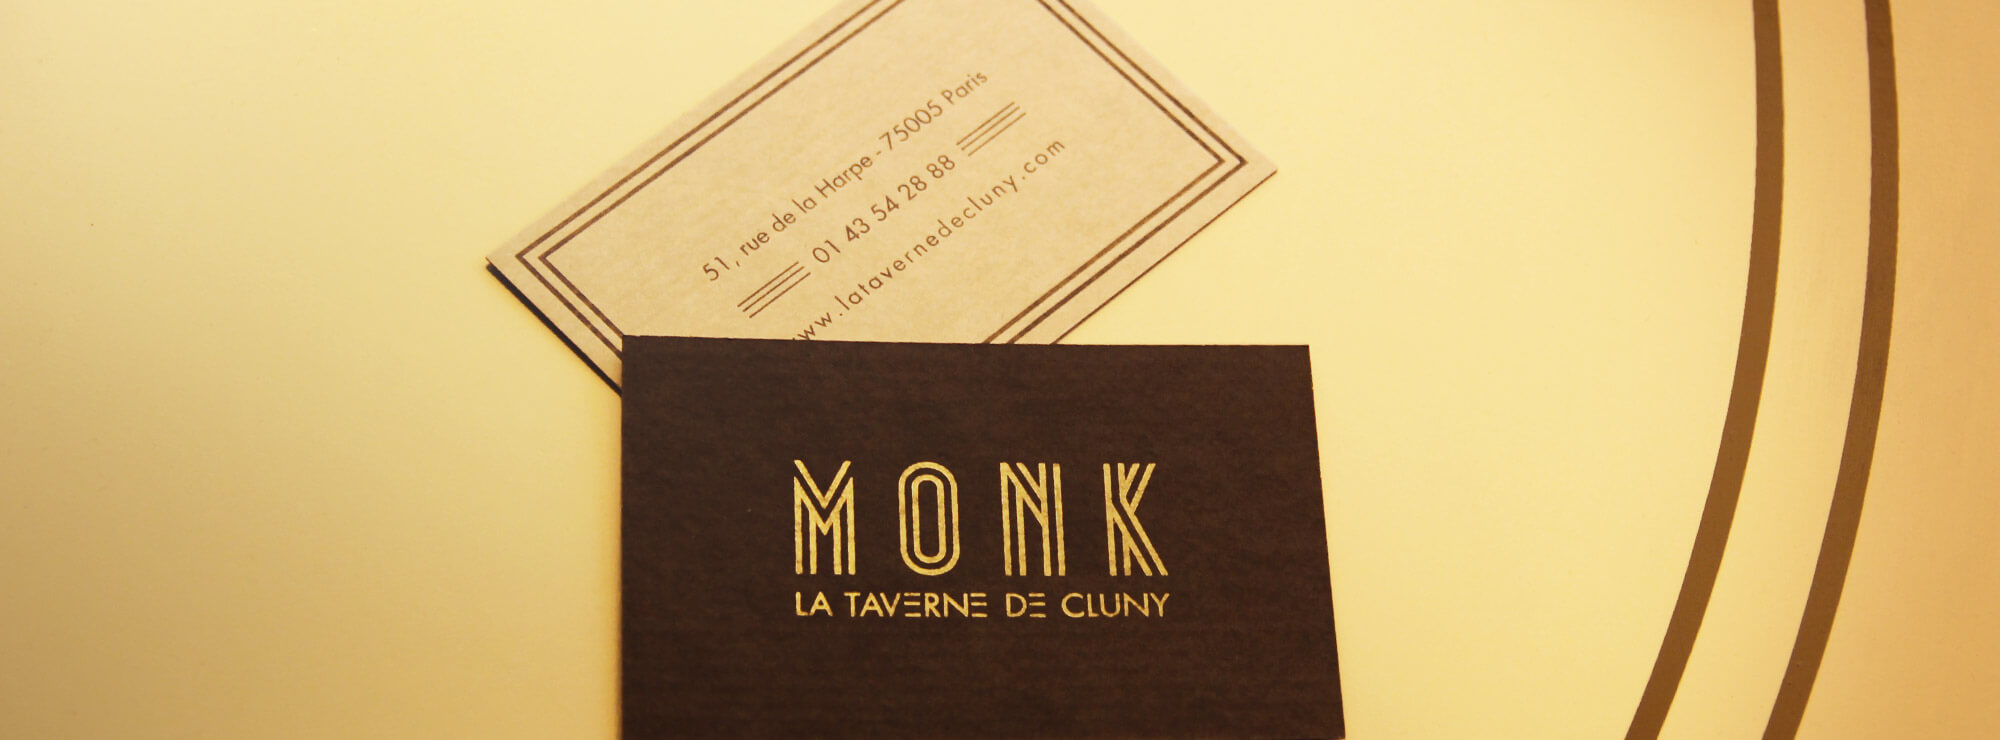 Monk - #e5b981_une identité à boire